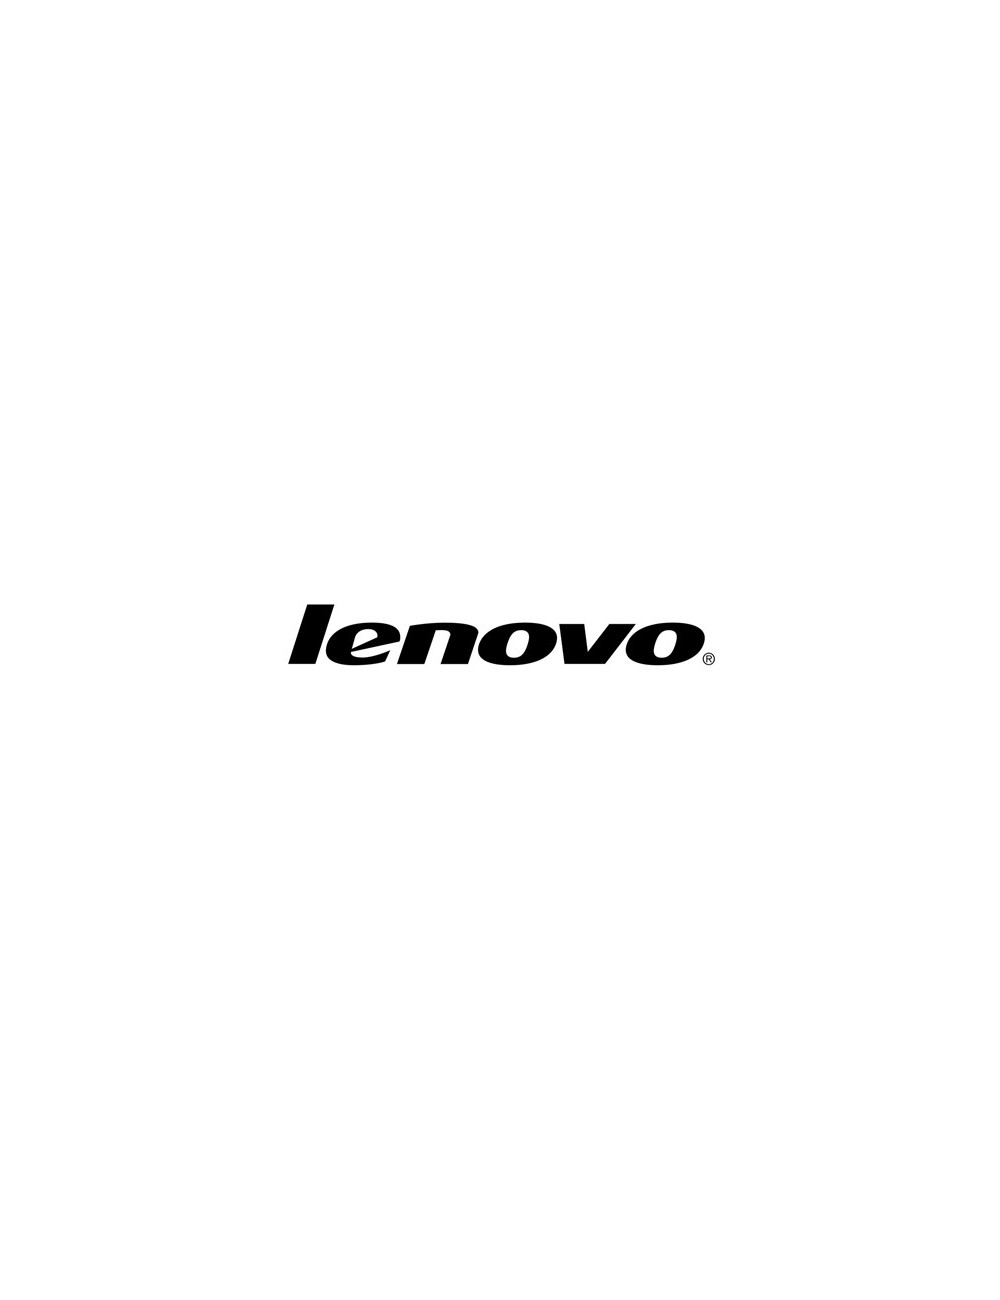 Lenovo 5WS0F63228 estensione della garanzia 1 licenza e 3 anno i